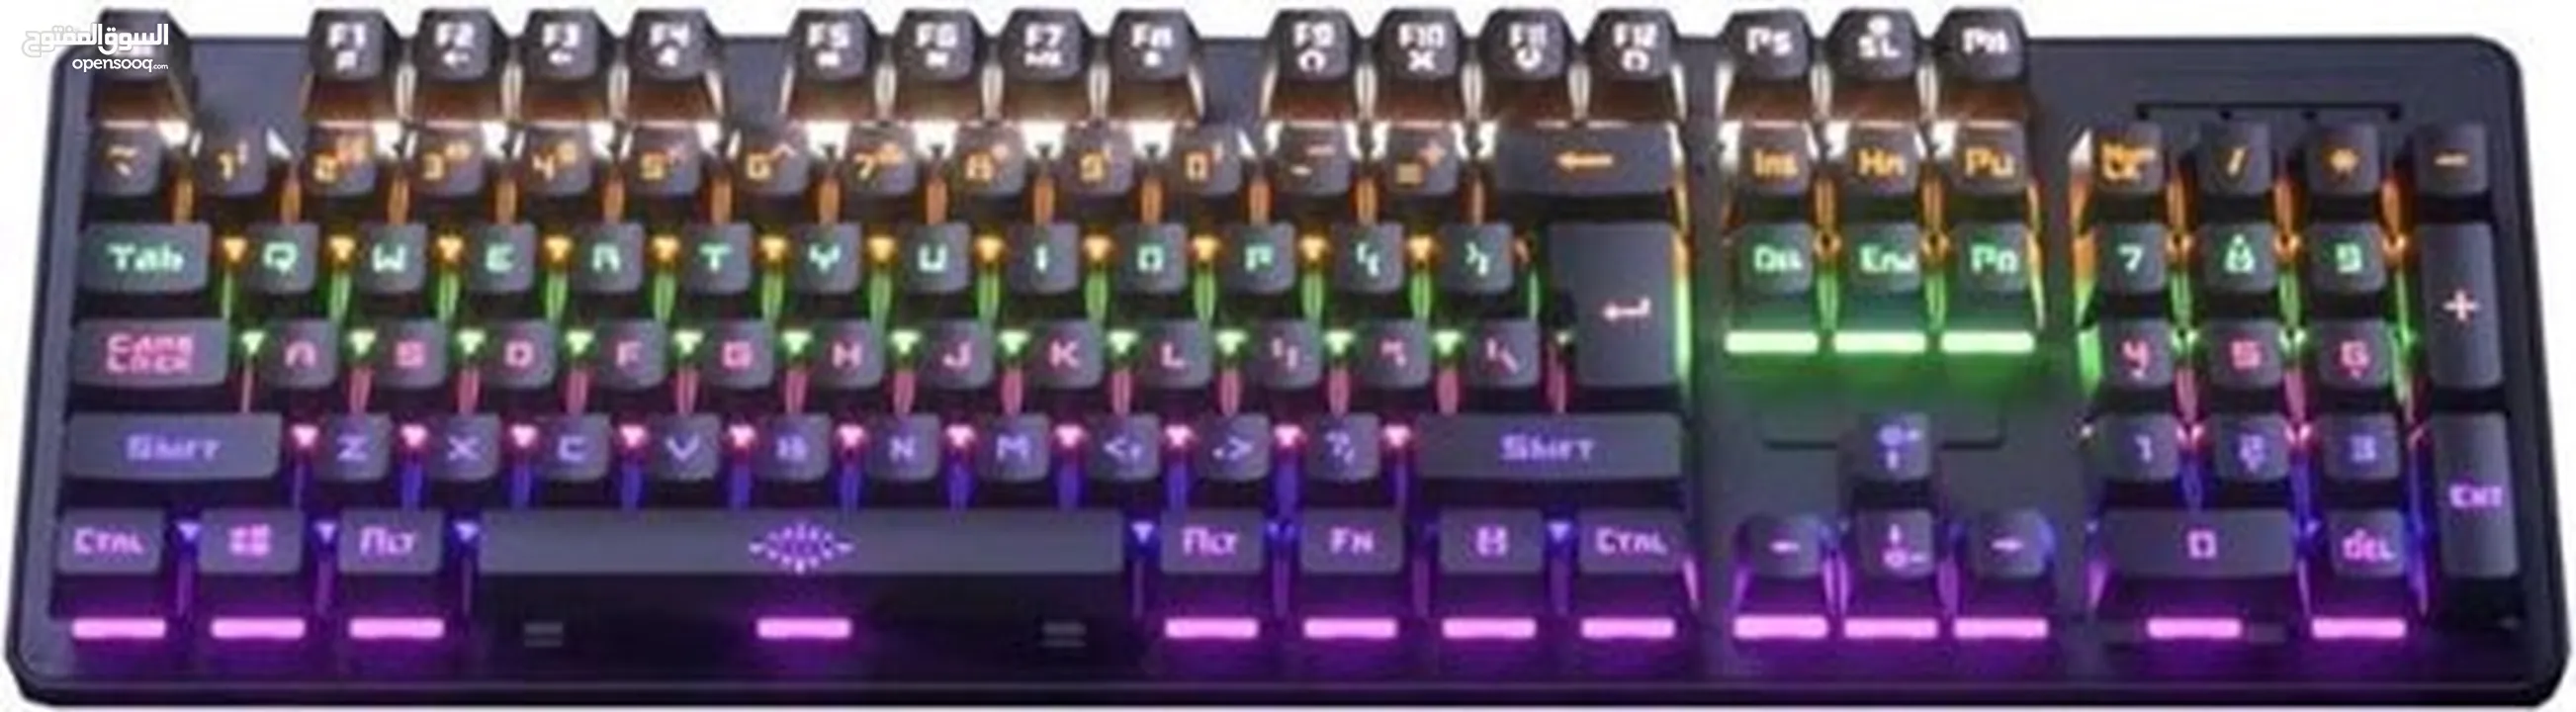 كيبورد جيمينج  مضيئ gaming keyboard